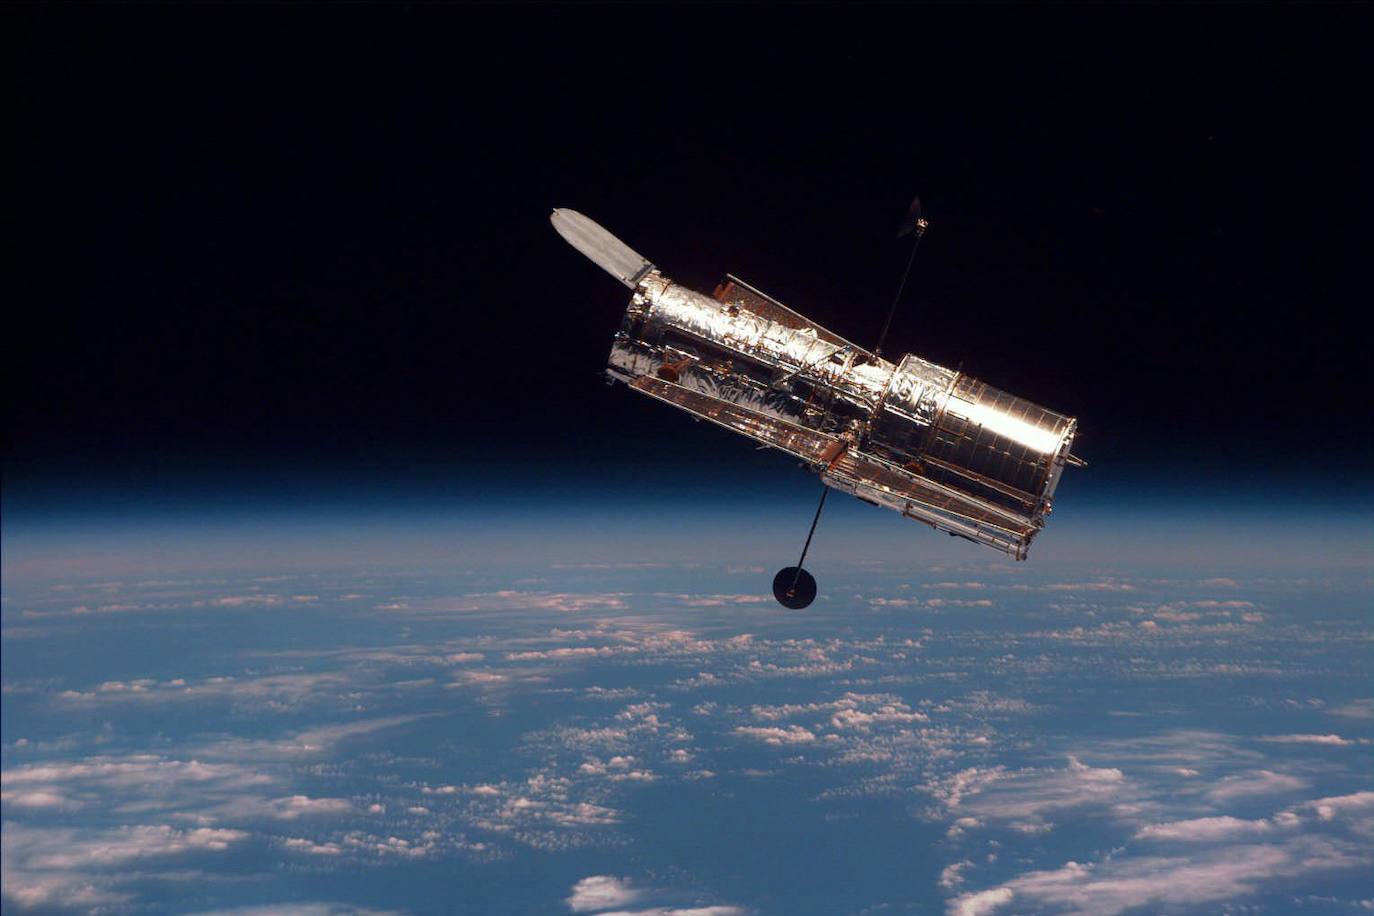 Vista del telescopio espacial Hubble.